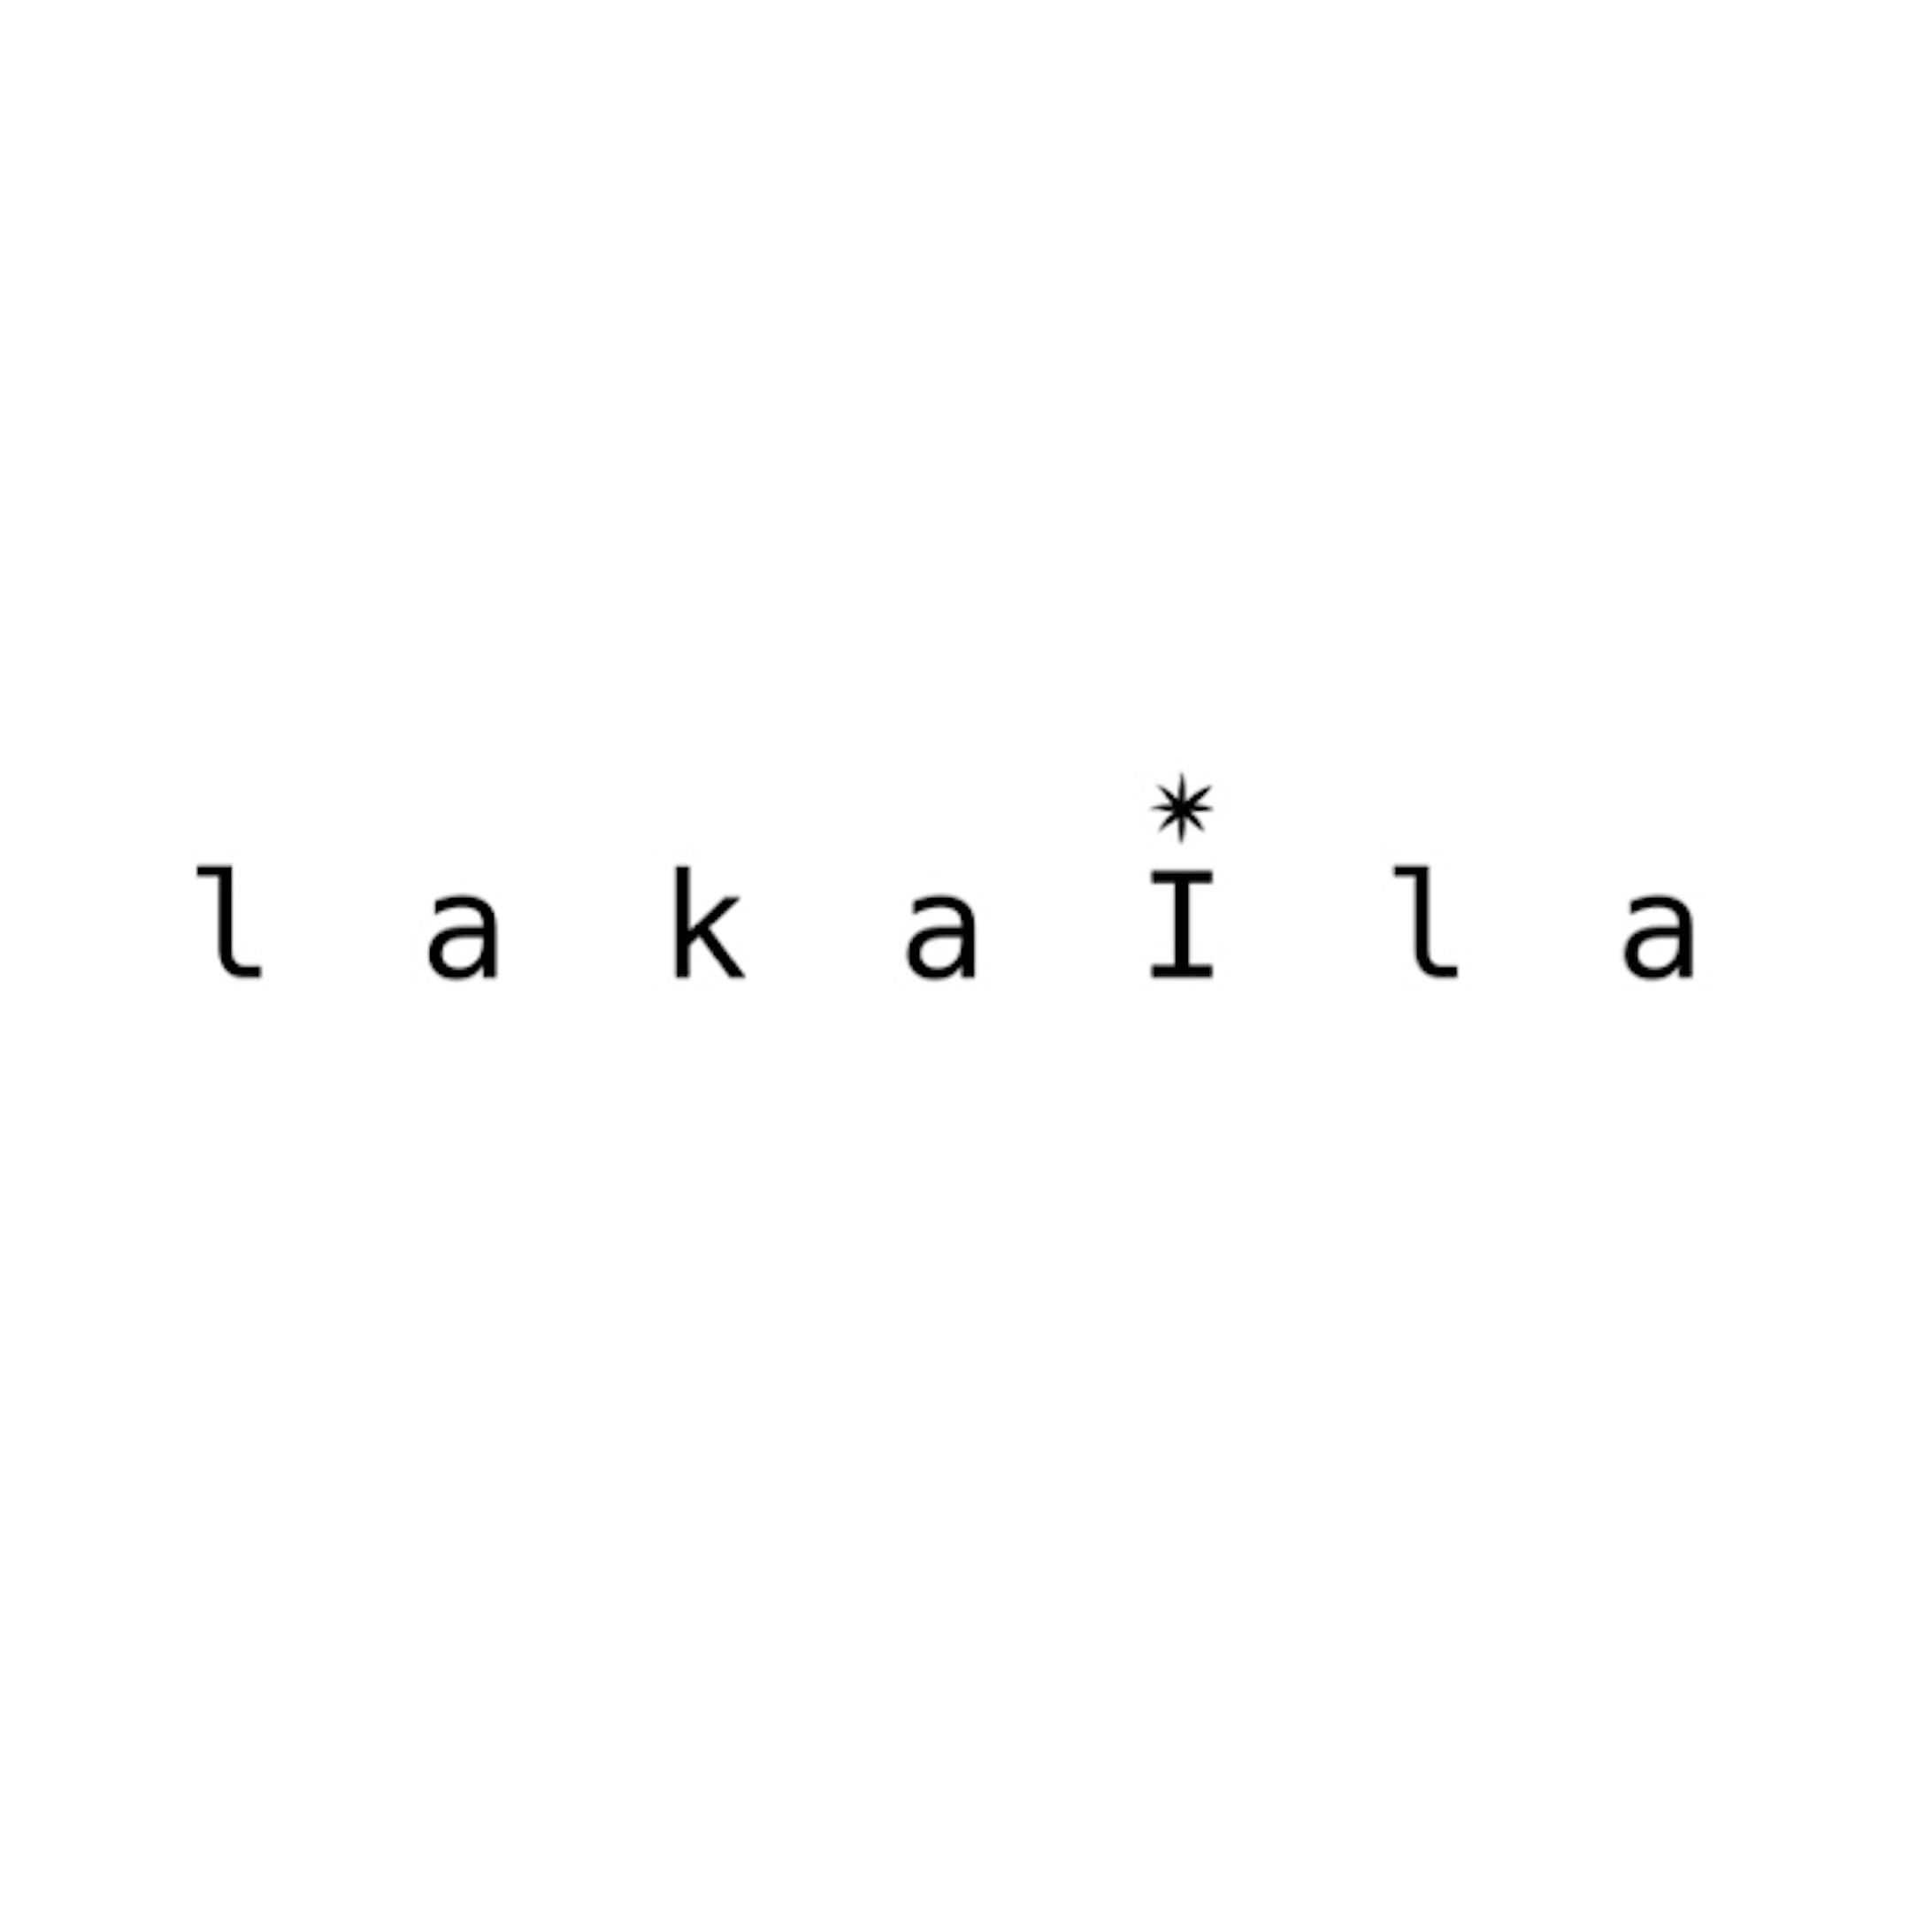 【Lakaira】パッケージとロゴデザイン-19